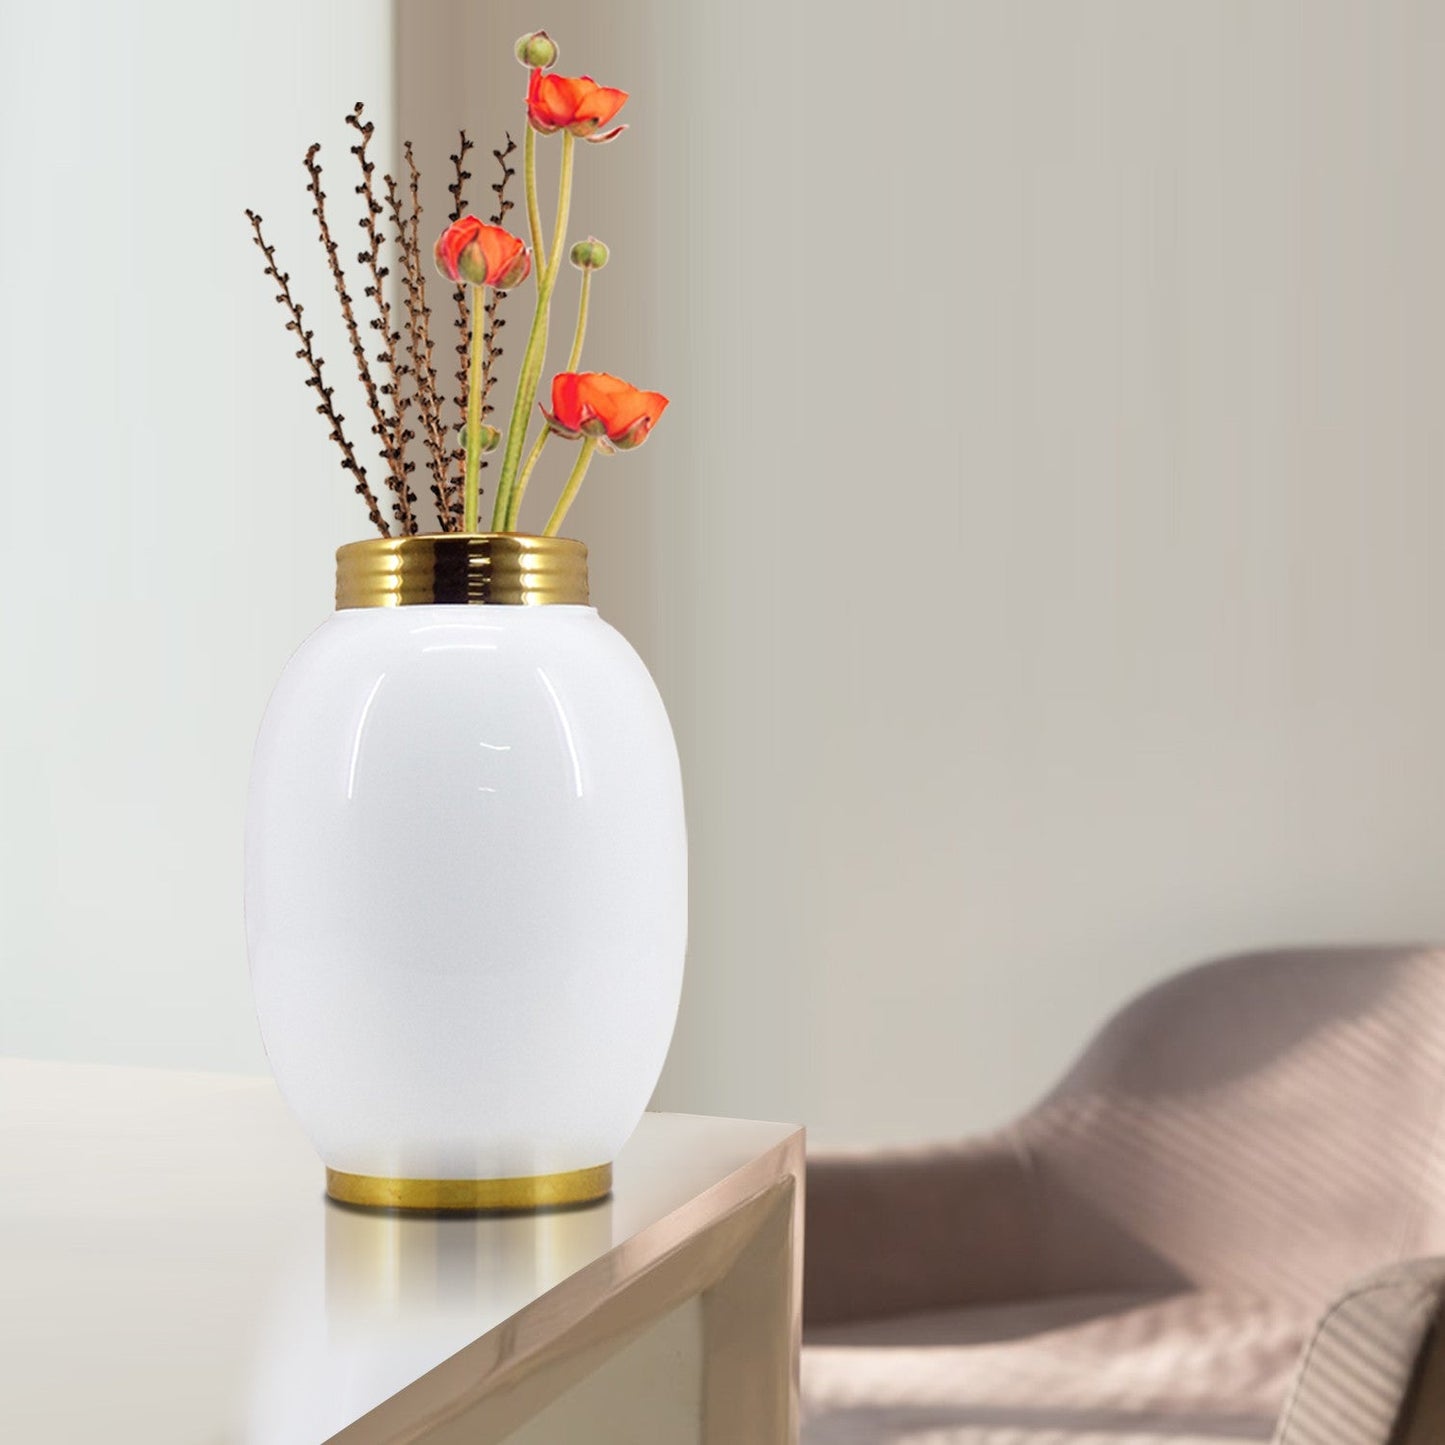 VON CASA Vase, Flower Vase, Unique Glazed Design, Decorative Vase, White, Ceramic